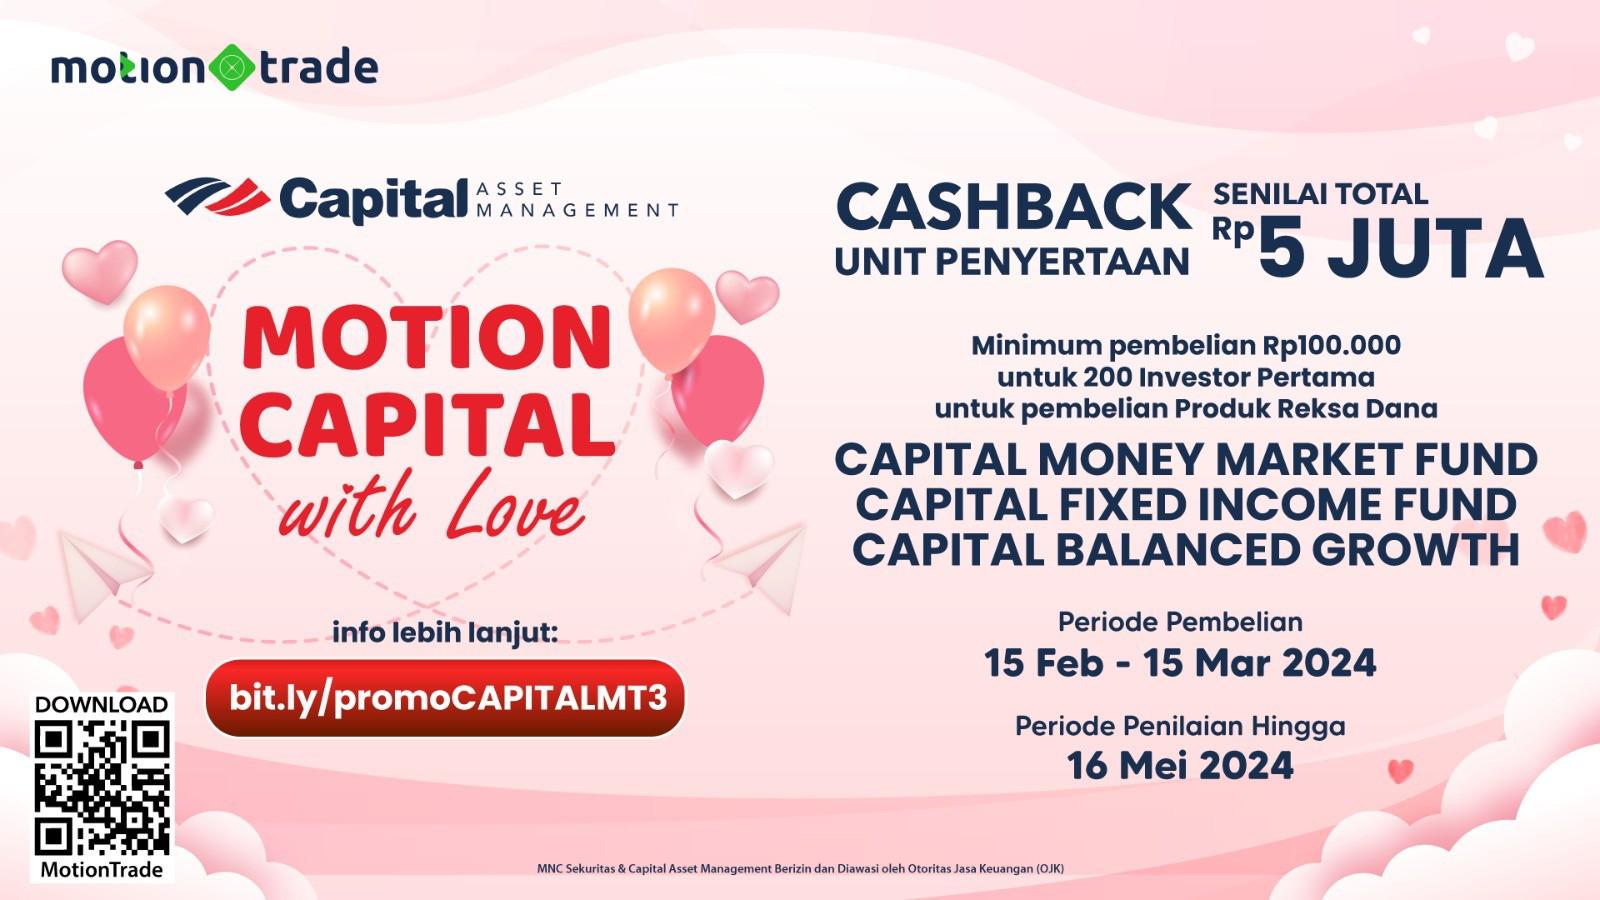 Berburu Kado Valentine dari Capital Asset Management Senilai Total Rp5 Juta di MotionTrade